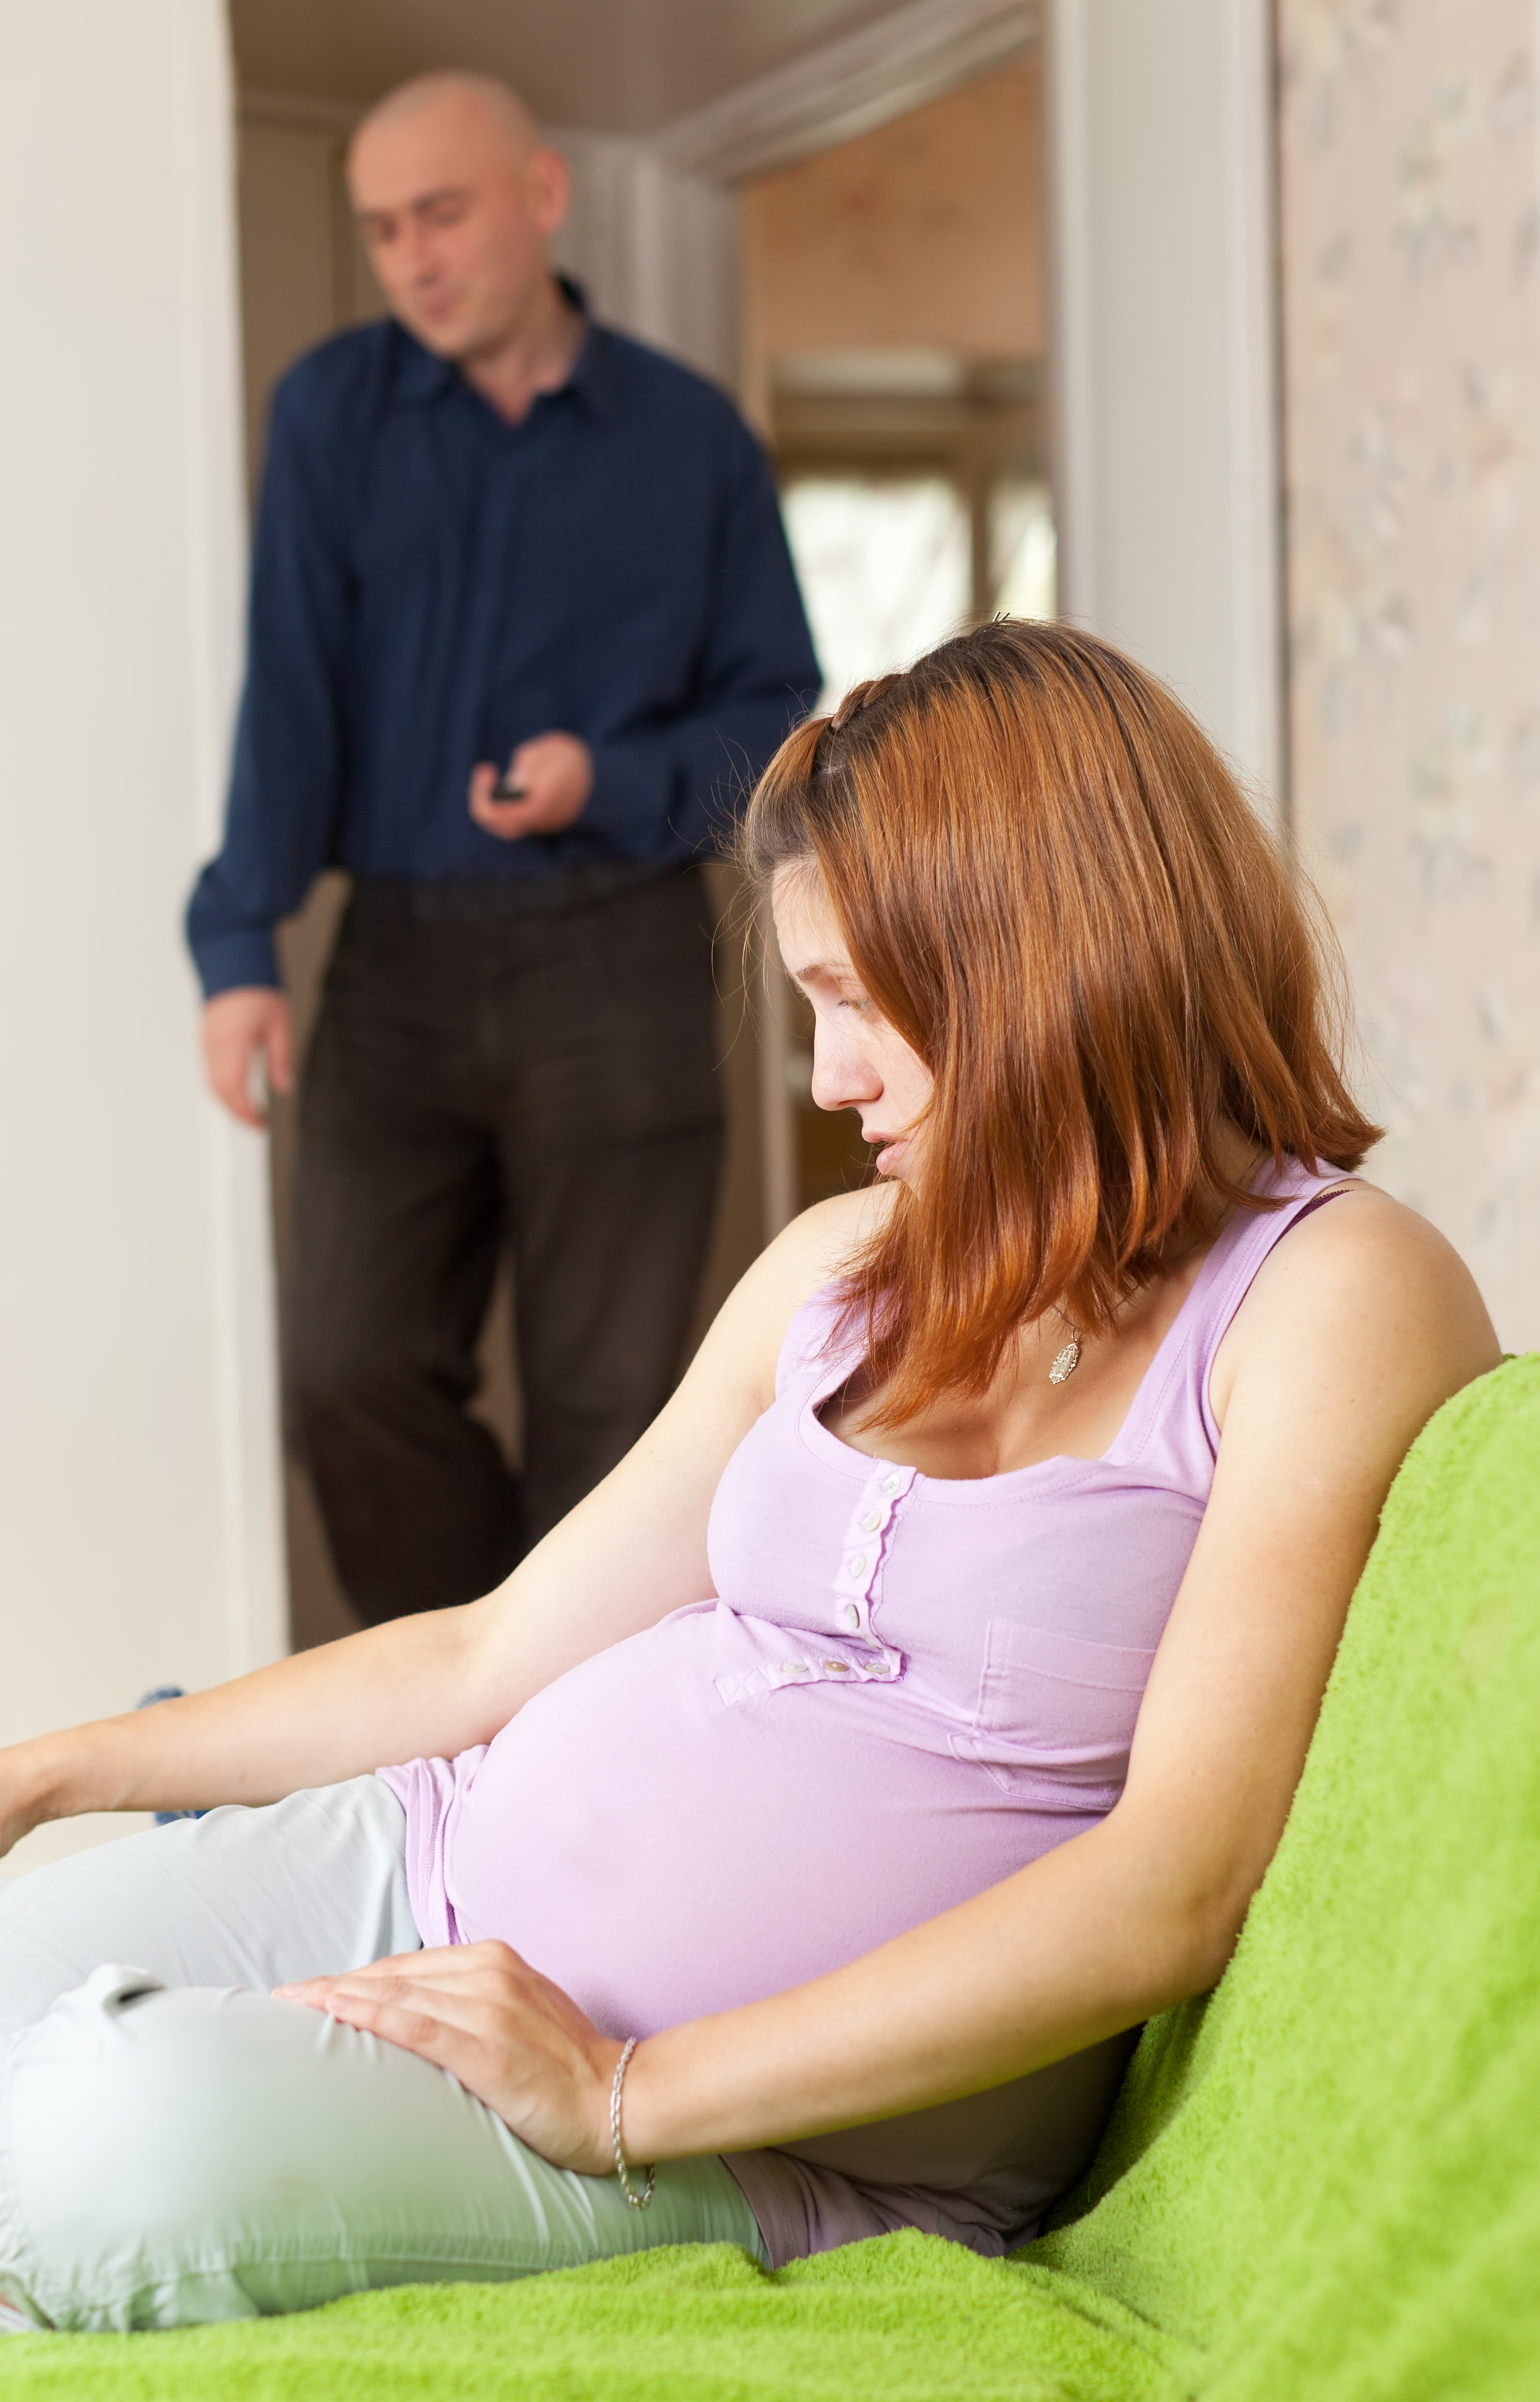 Mujer embarazada y un hombre al fondo | Foto: Shutterstock